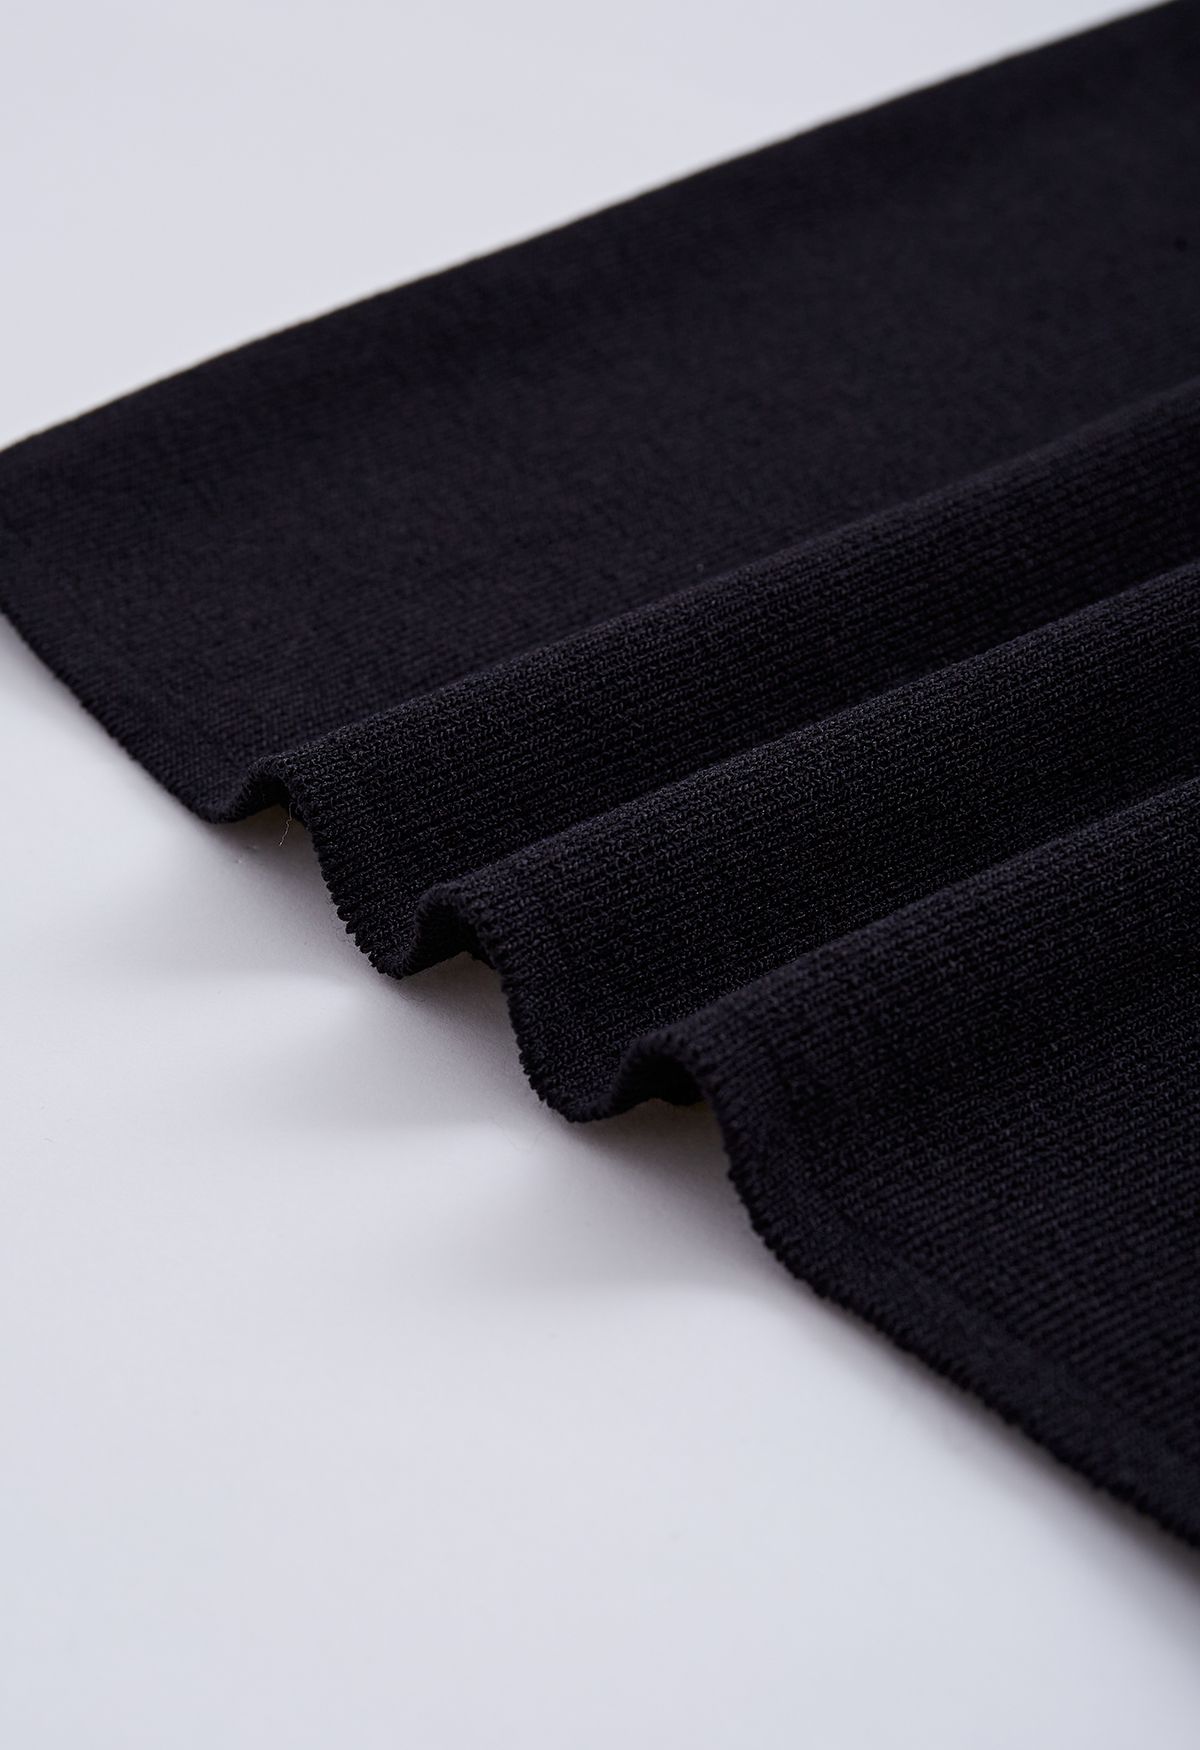 Spliced Ruched Off-Shoulder Knit Crop Top in Black